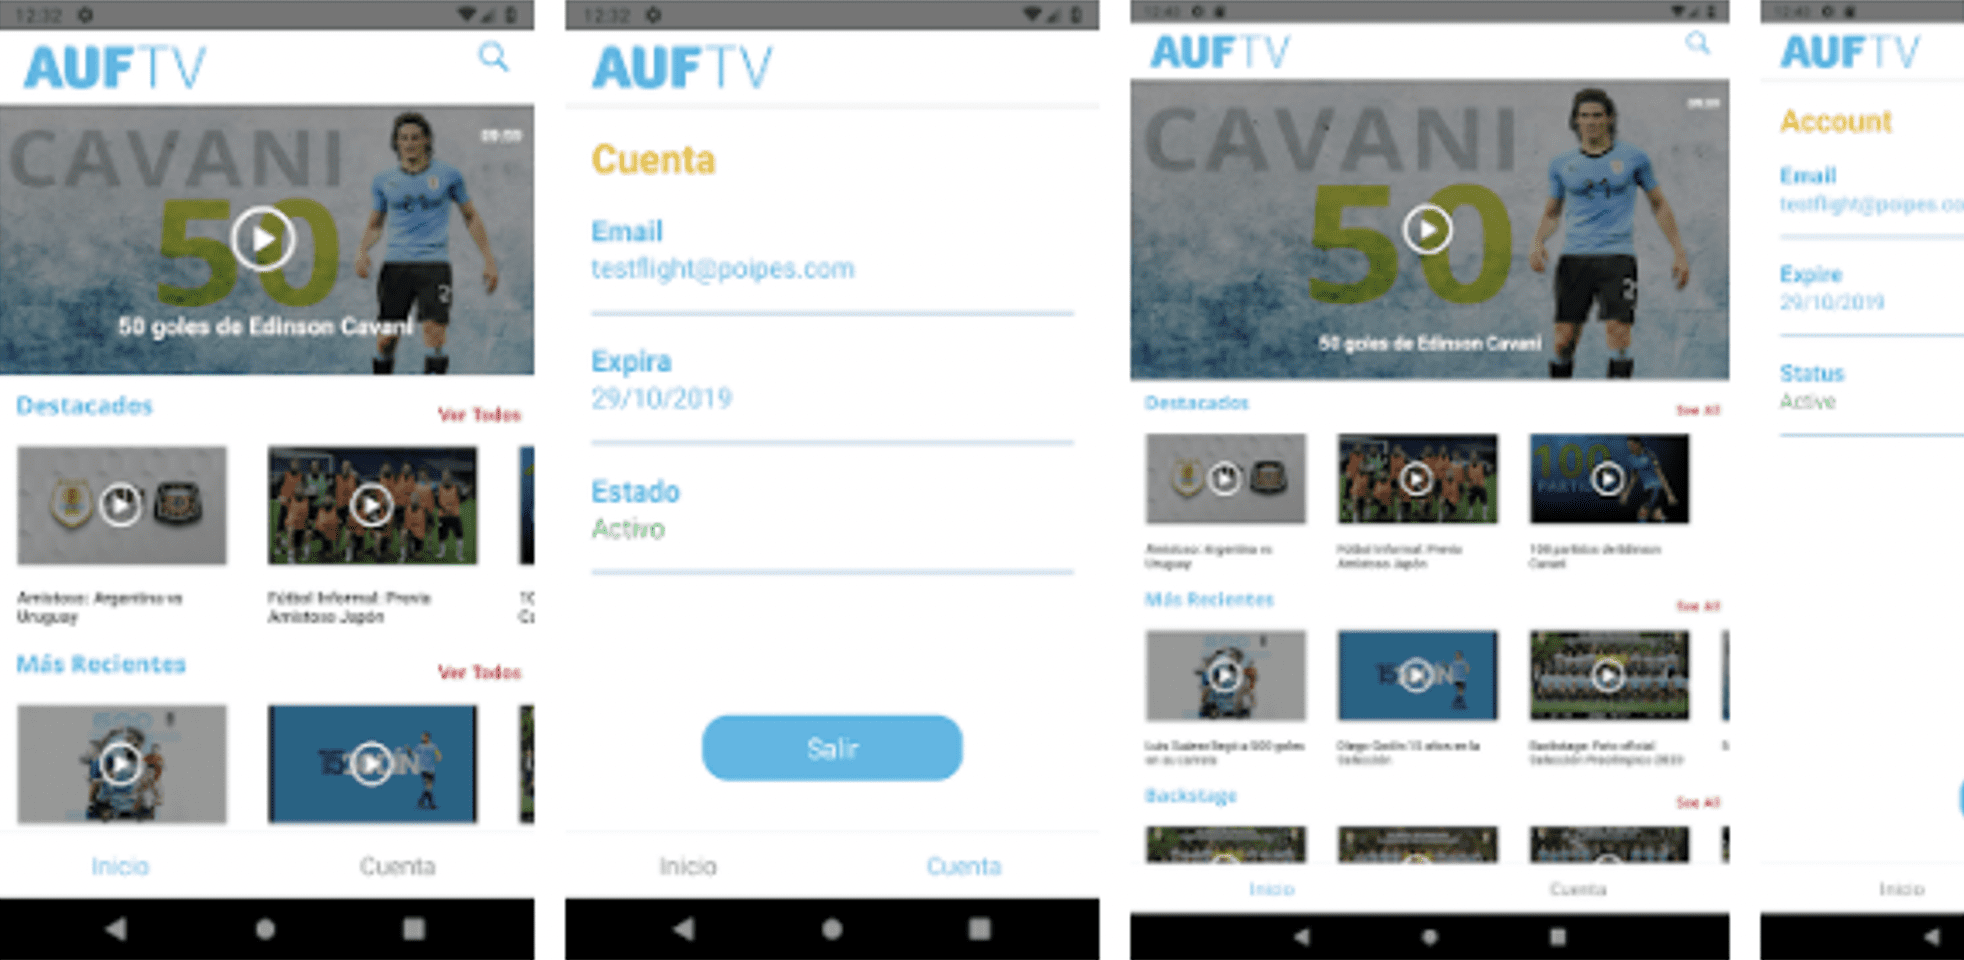 Aplicación de la selección uruguaya “AUF TV” 